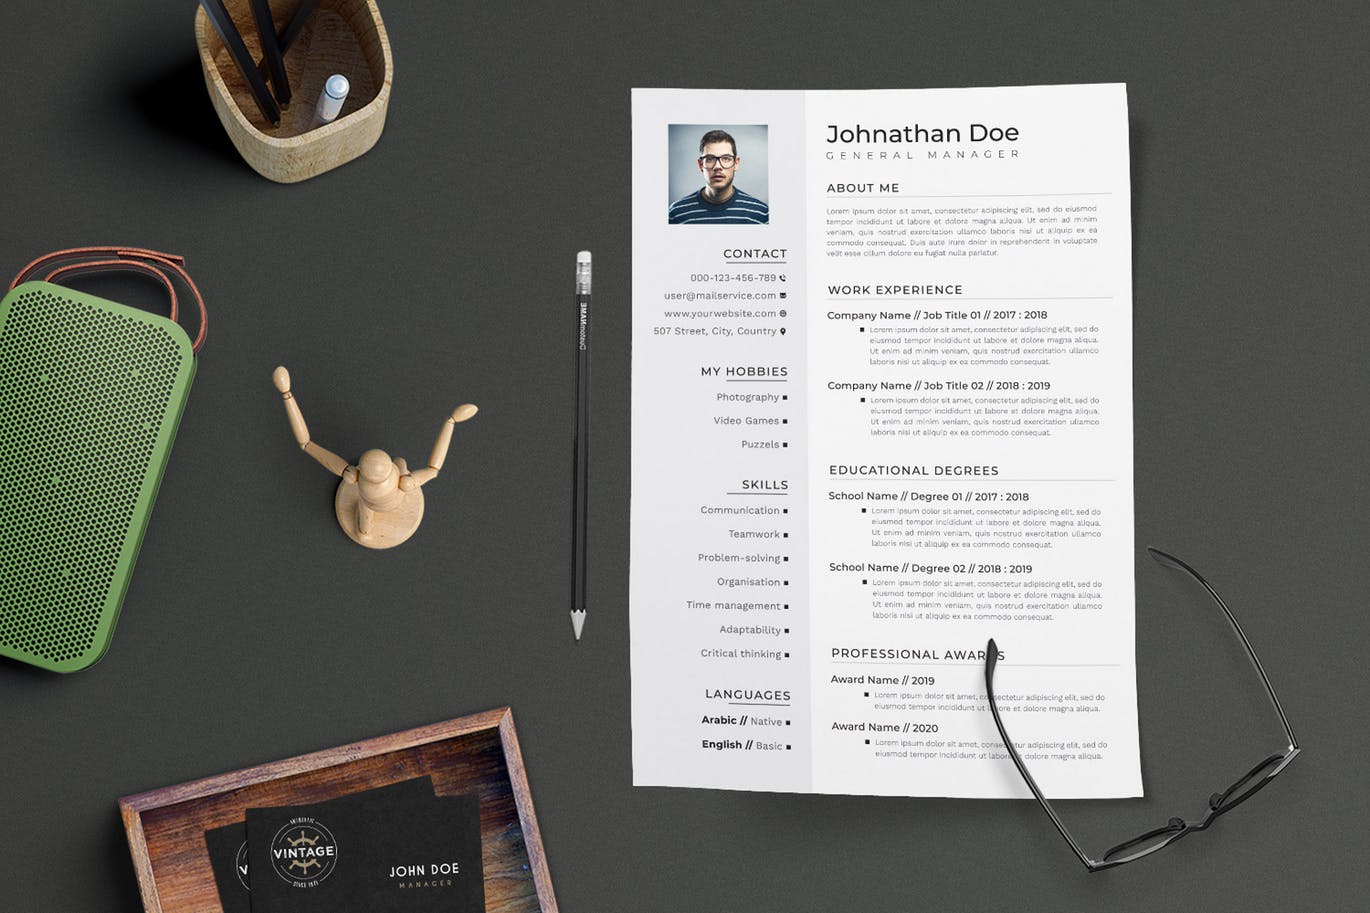 项目管理经理个人电子第一素材精选简历模板 CV Resume插图(1)